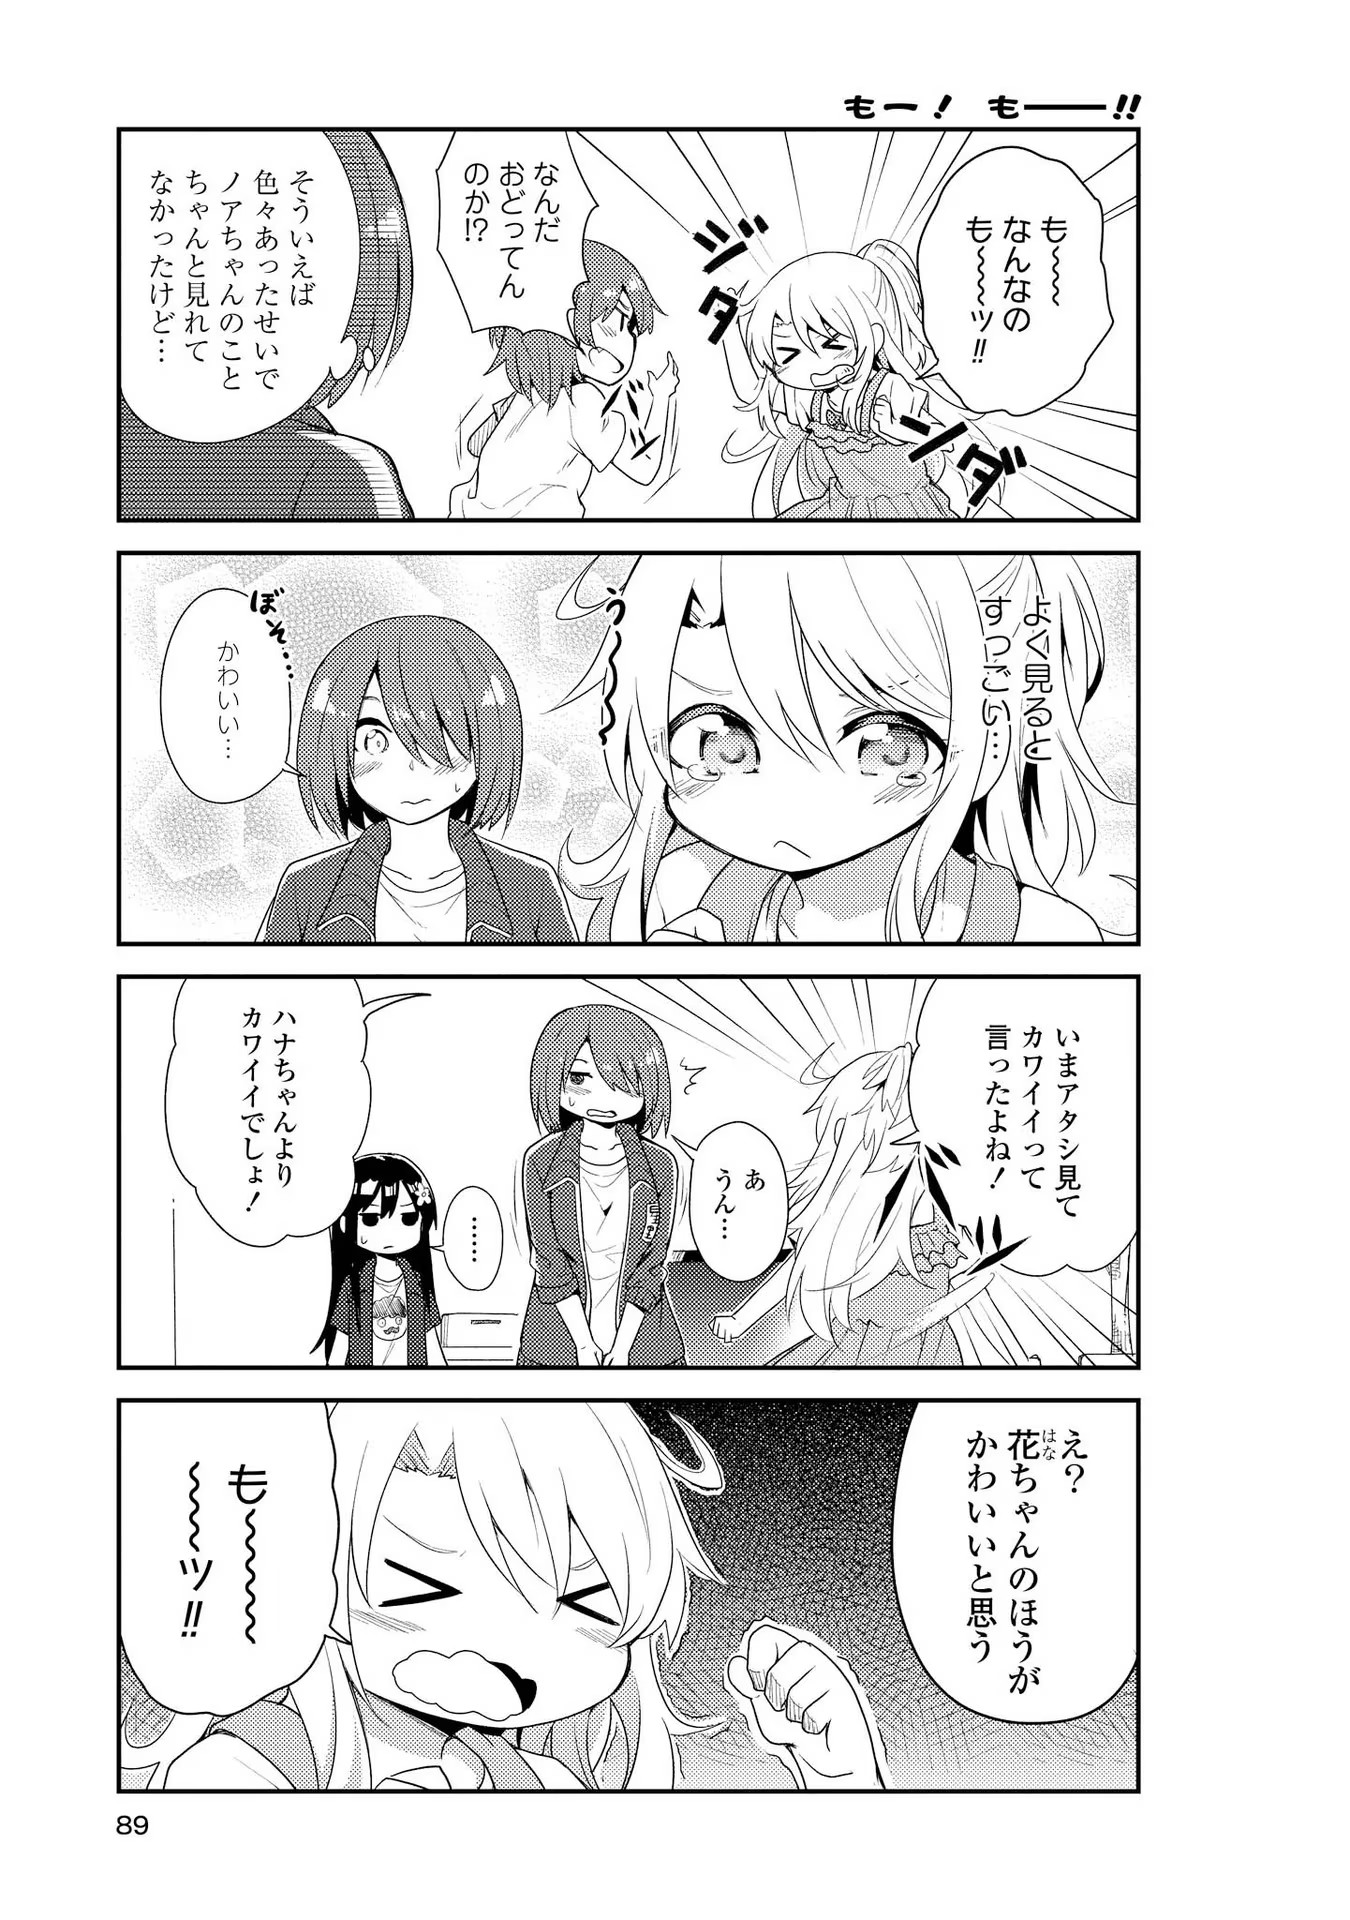 Watashi ni Tenshi ga Maiorita! - Chapter 6 - Page 3